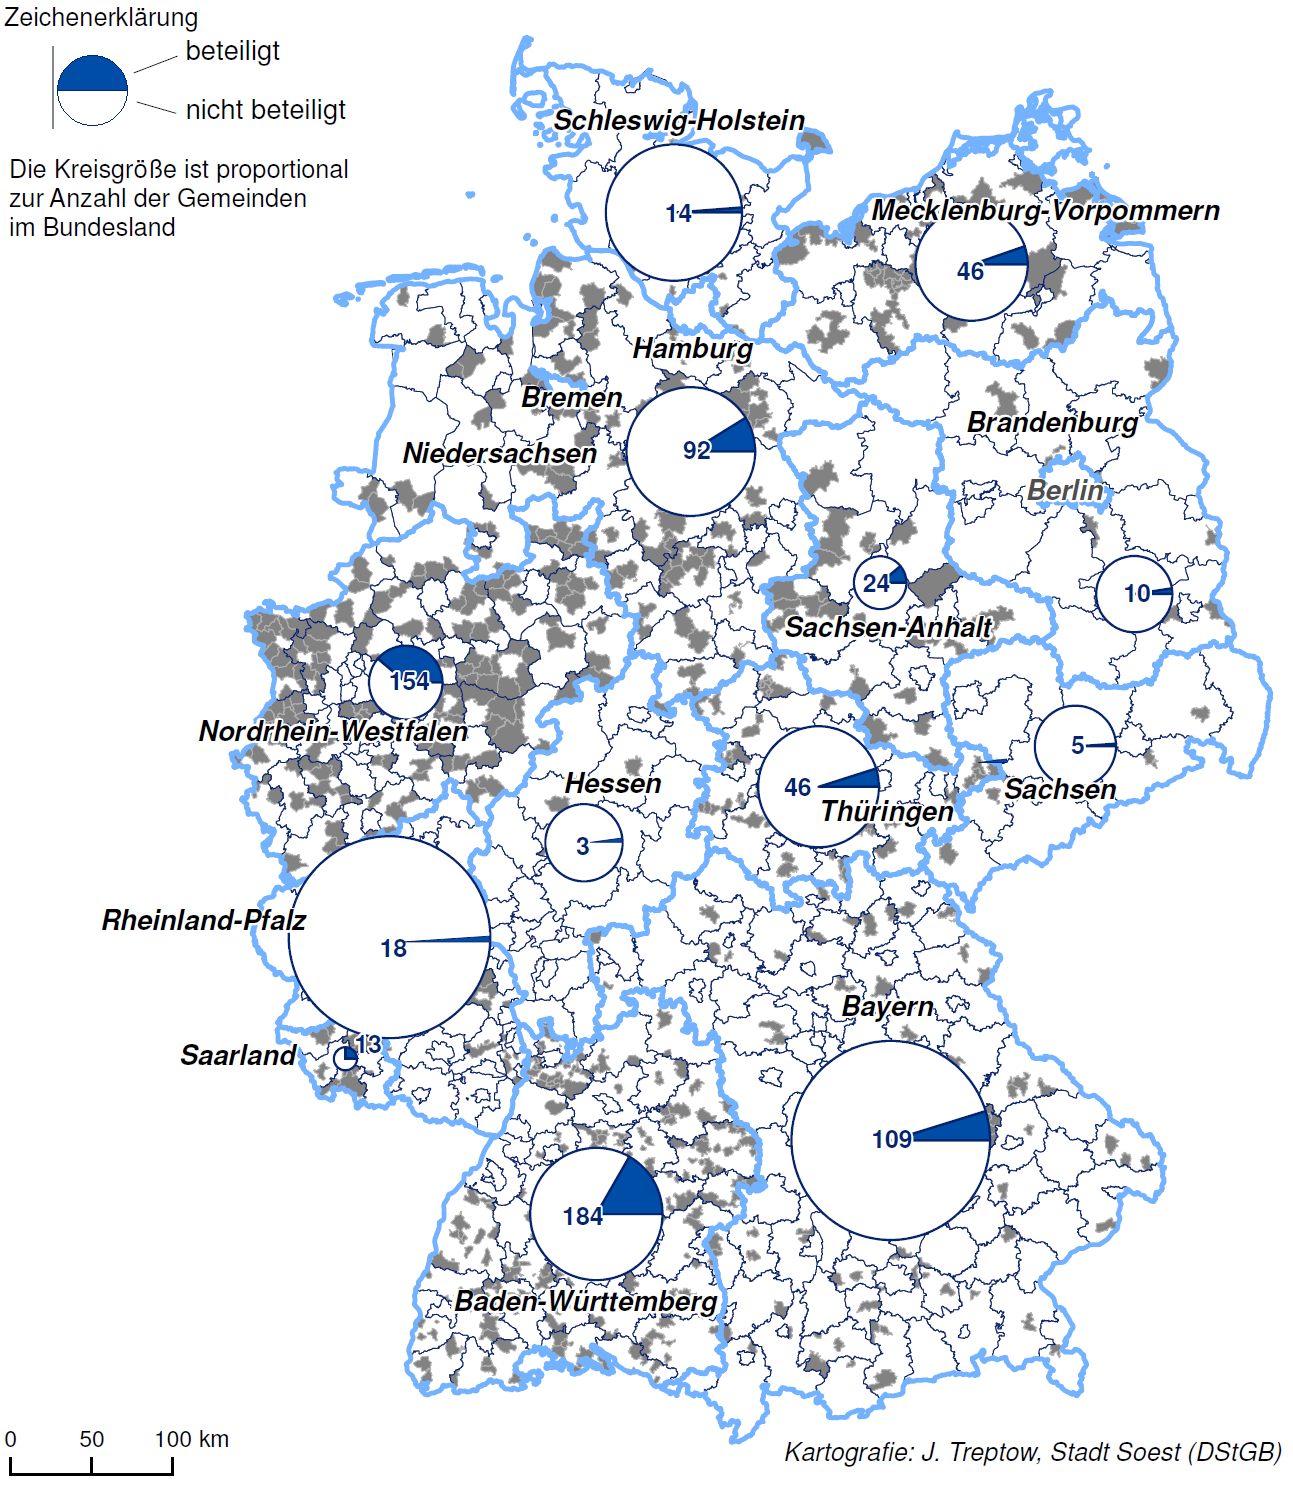 Insgesamt haben 74 Verbandsgemeinden sowie 644 kreisangehörige Städte und Gemeinden an der Umfrage teilgenommen.